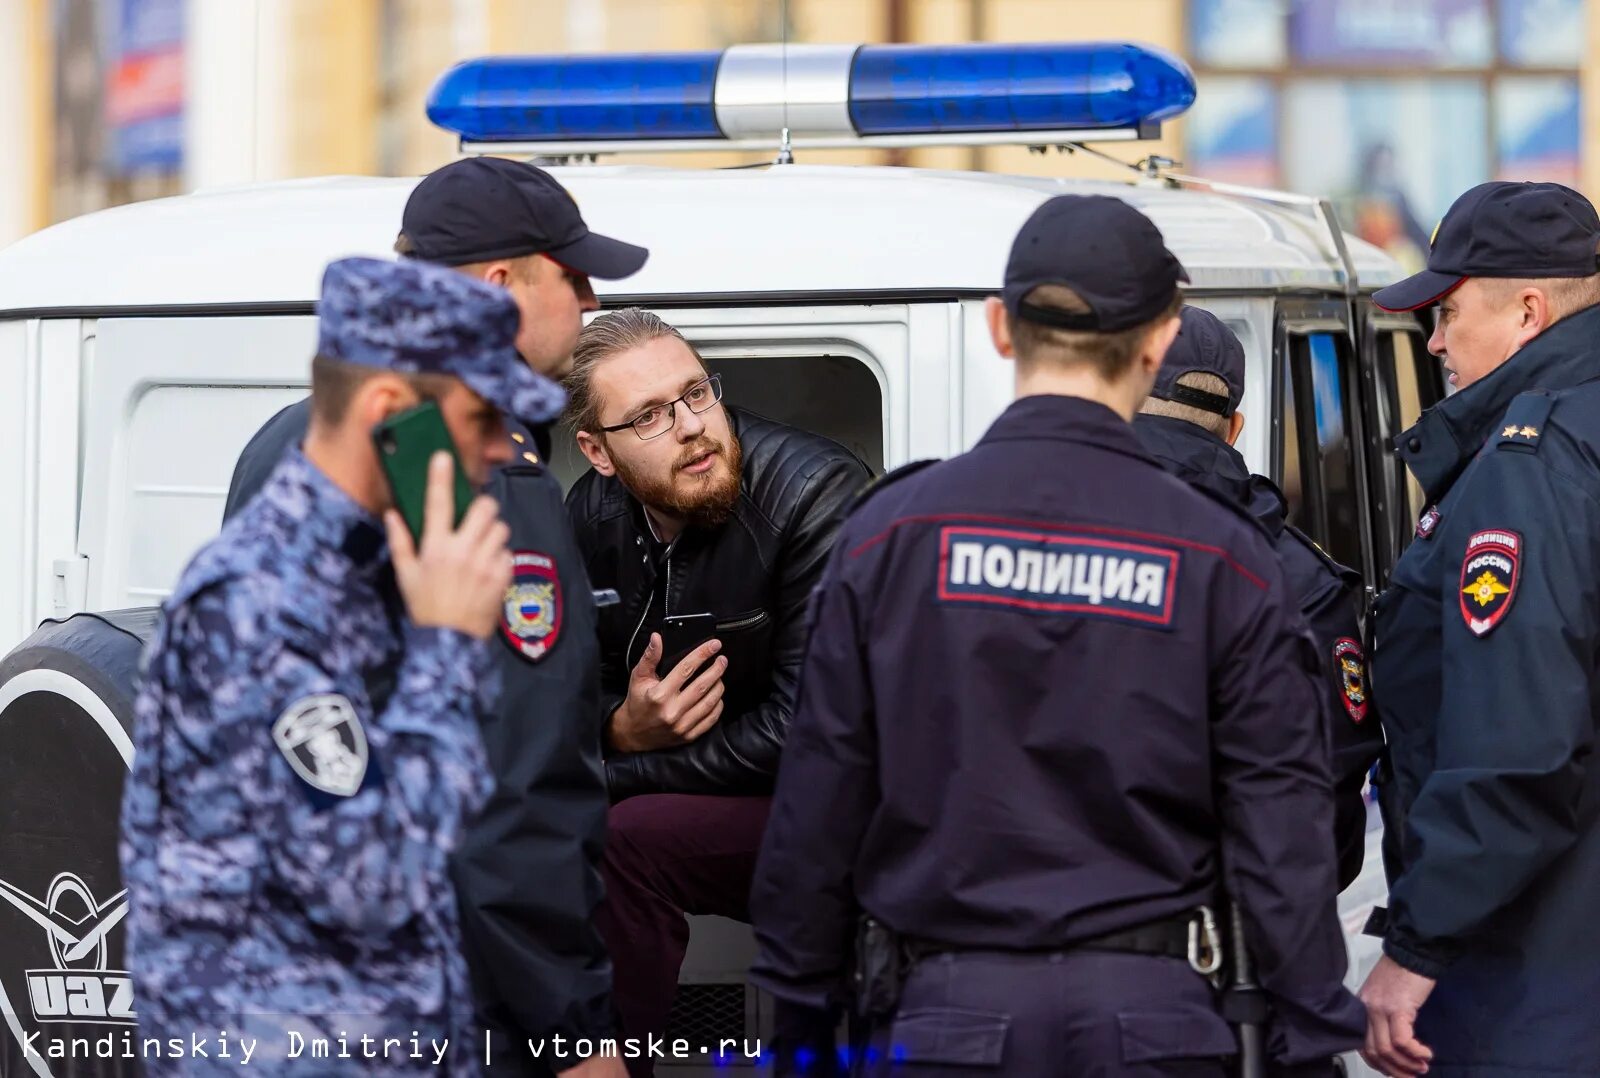 Платину задержали в томске. Сотрудник полиции. Полицейский человек. 16 Апреля 2020 Челябинск полиция массовое задержание.